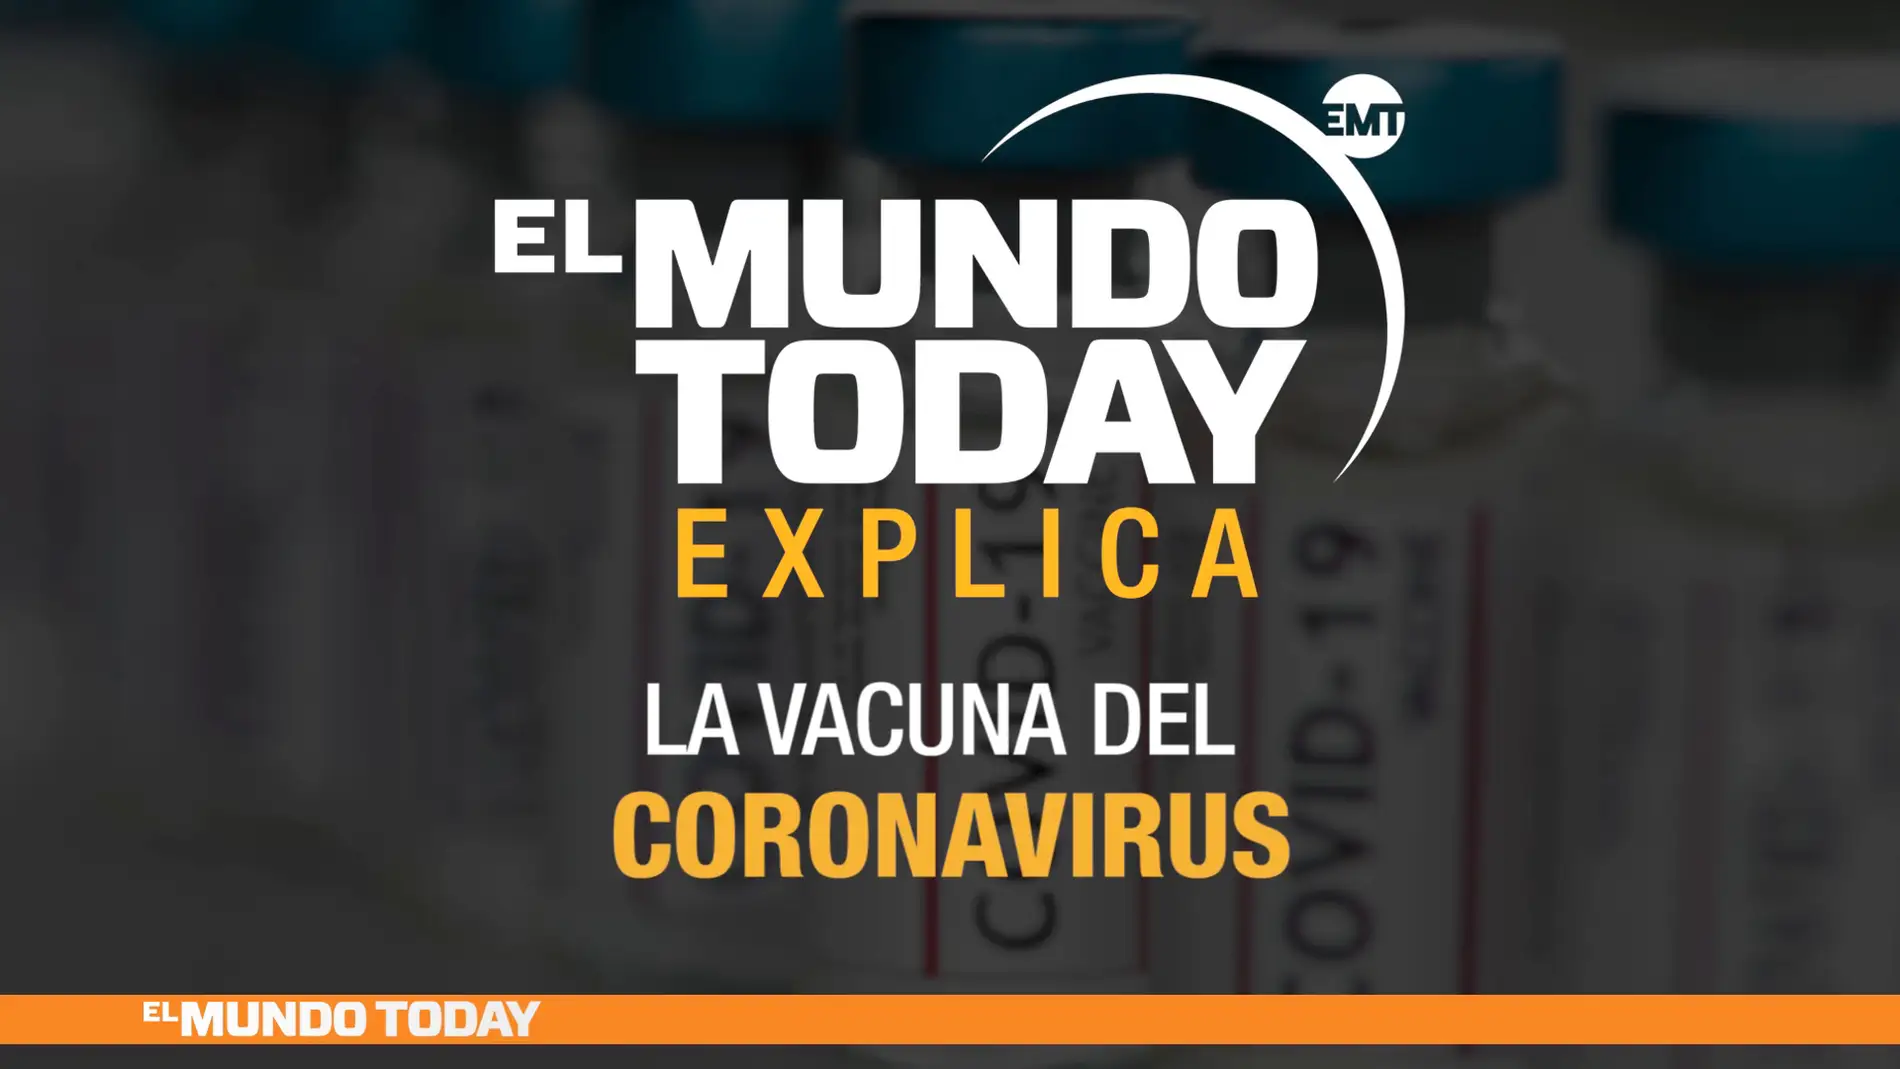 Estas son las claves para encontrar la vacuna del coronavirus